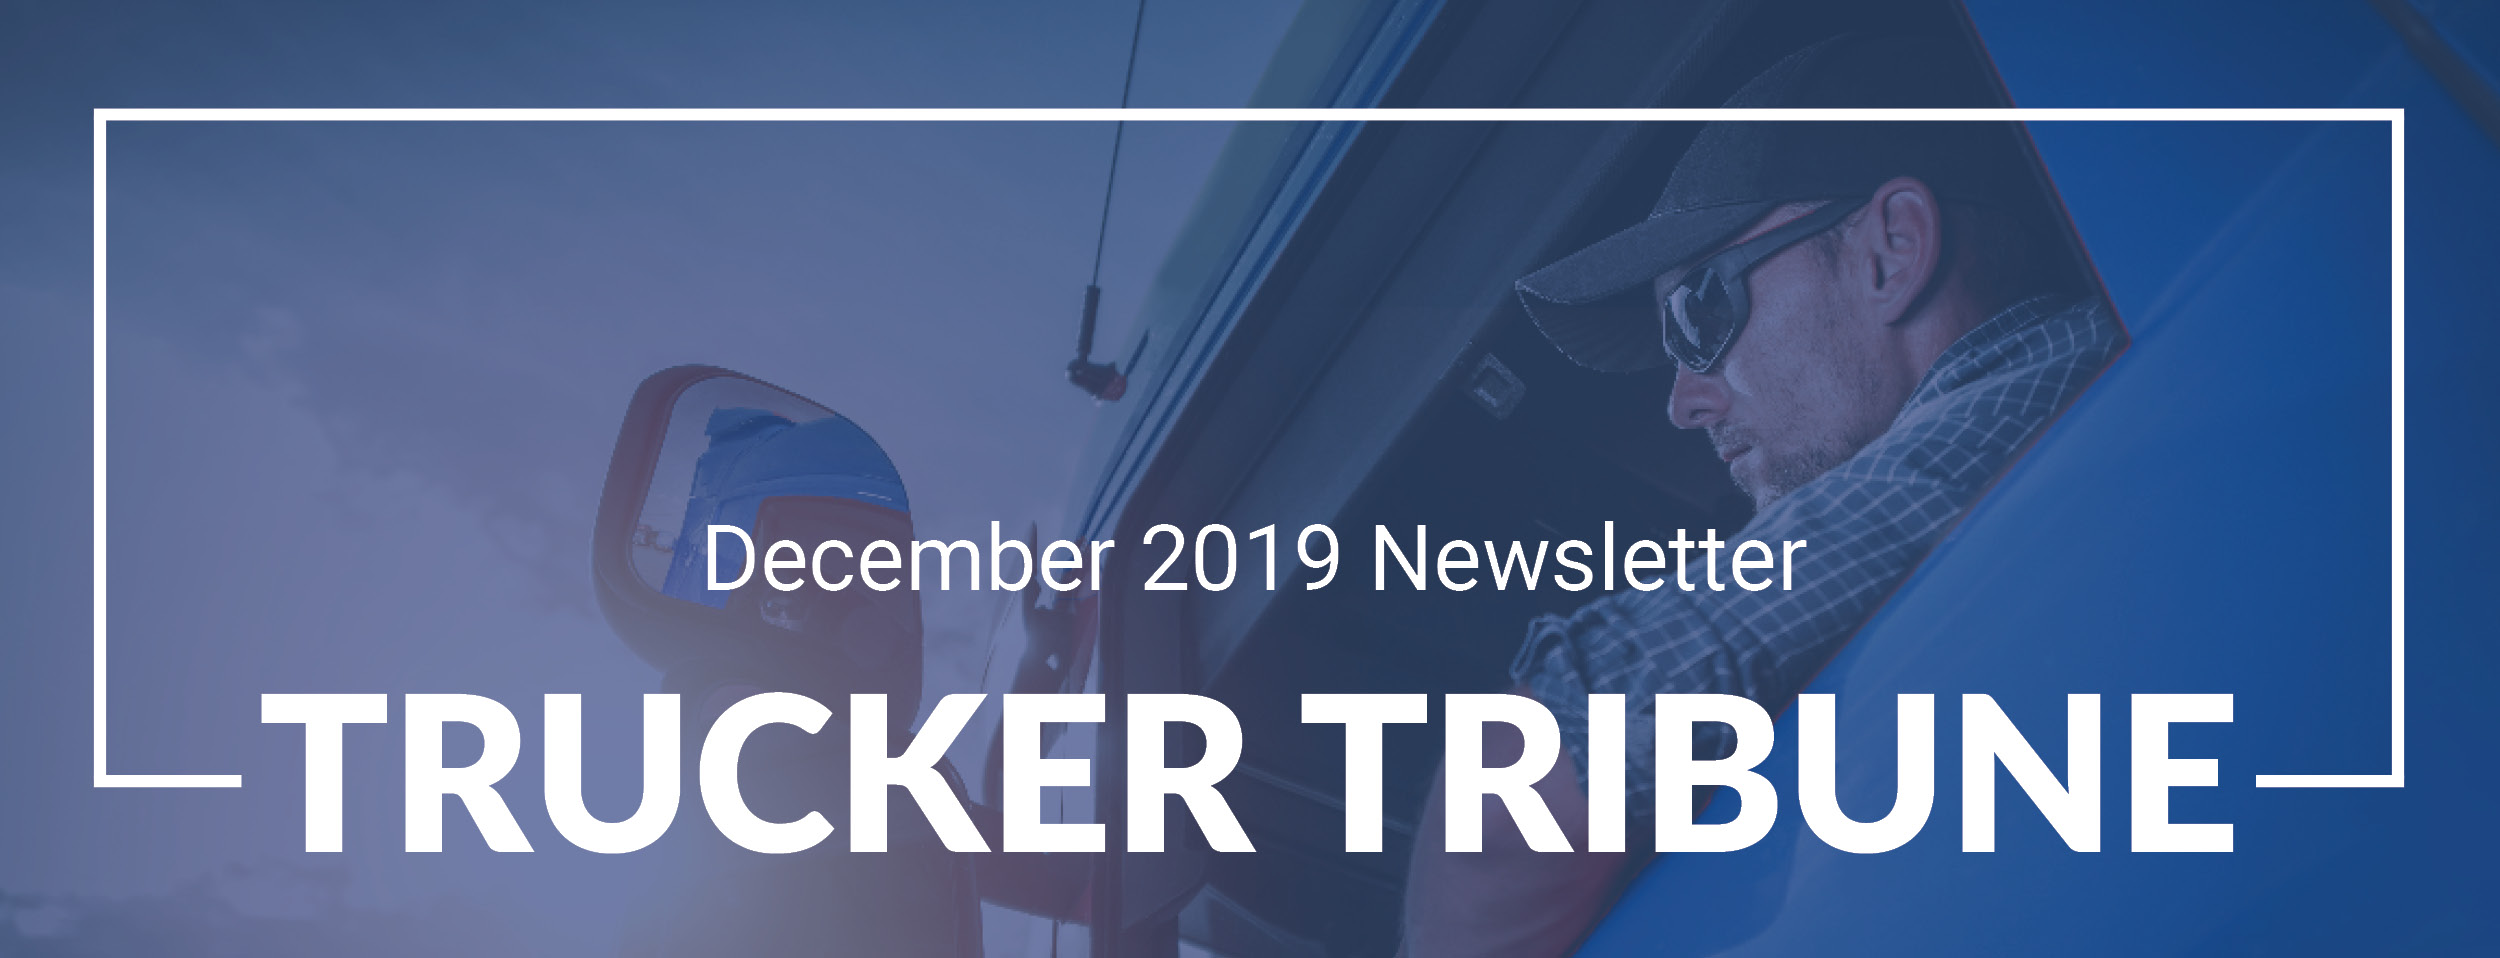 Trucker_Tribune_Header Dec 2019-1